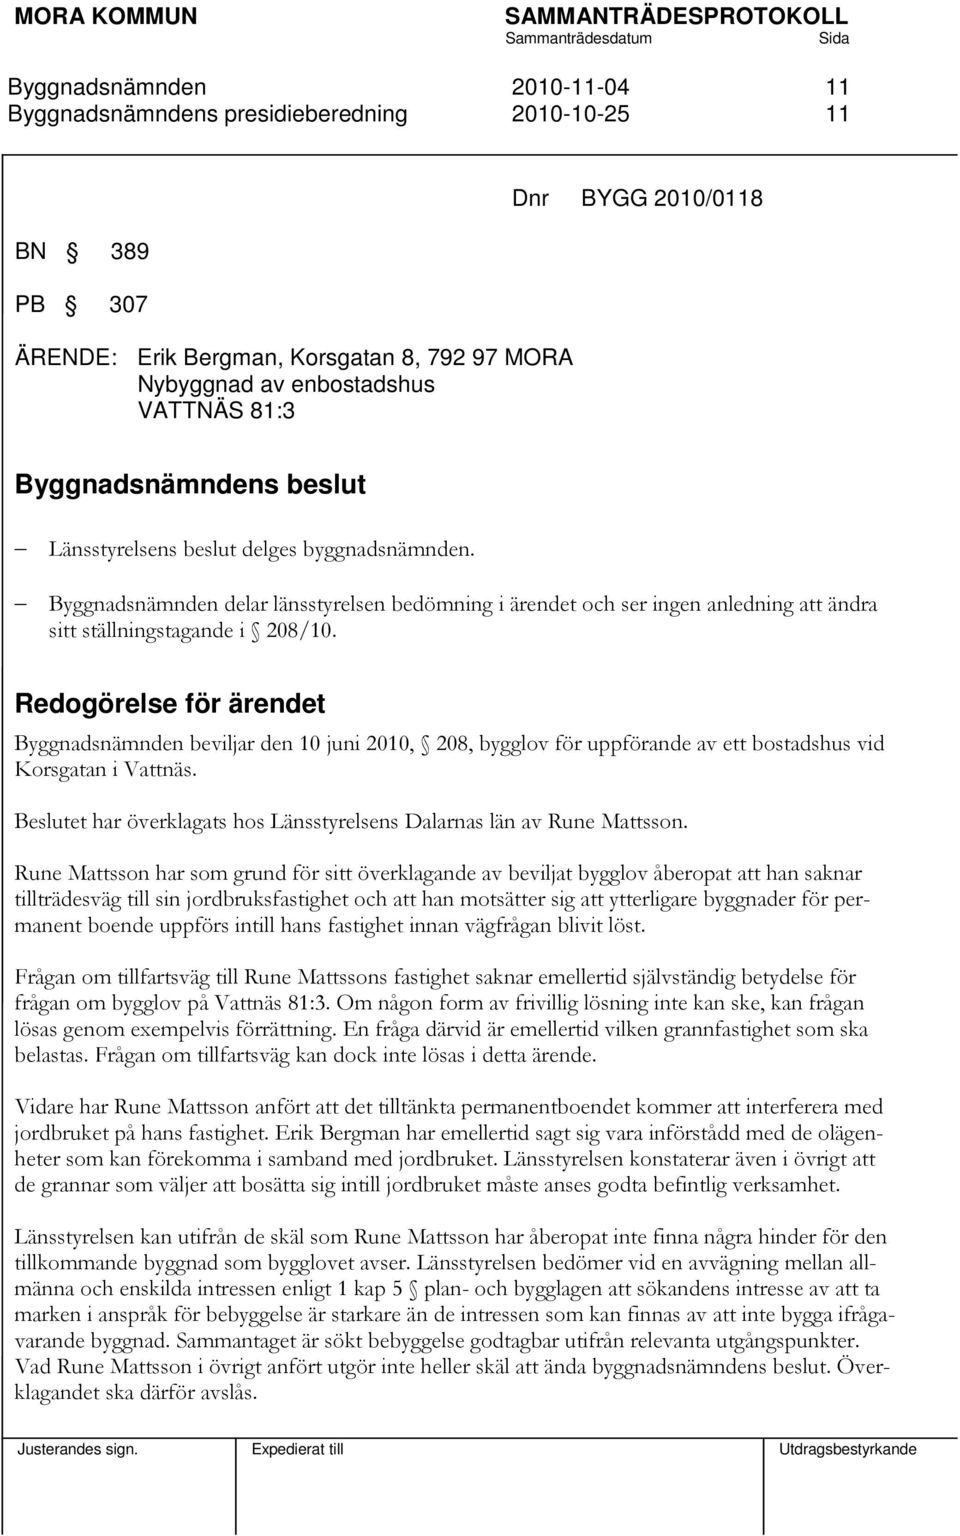 Redogörelse för ärendet beviljar den 10 juni 2010, 208, bygglov för uppförande av ett bostadshus vid Korsgatan i Vattnäs. Beslutet har överklagats hos Länsstyrelsens Dalarnas län av Rune Mattsson.